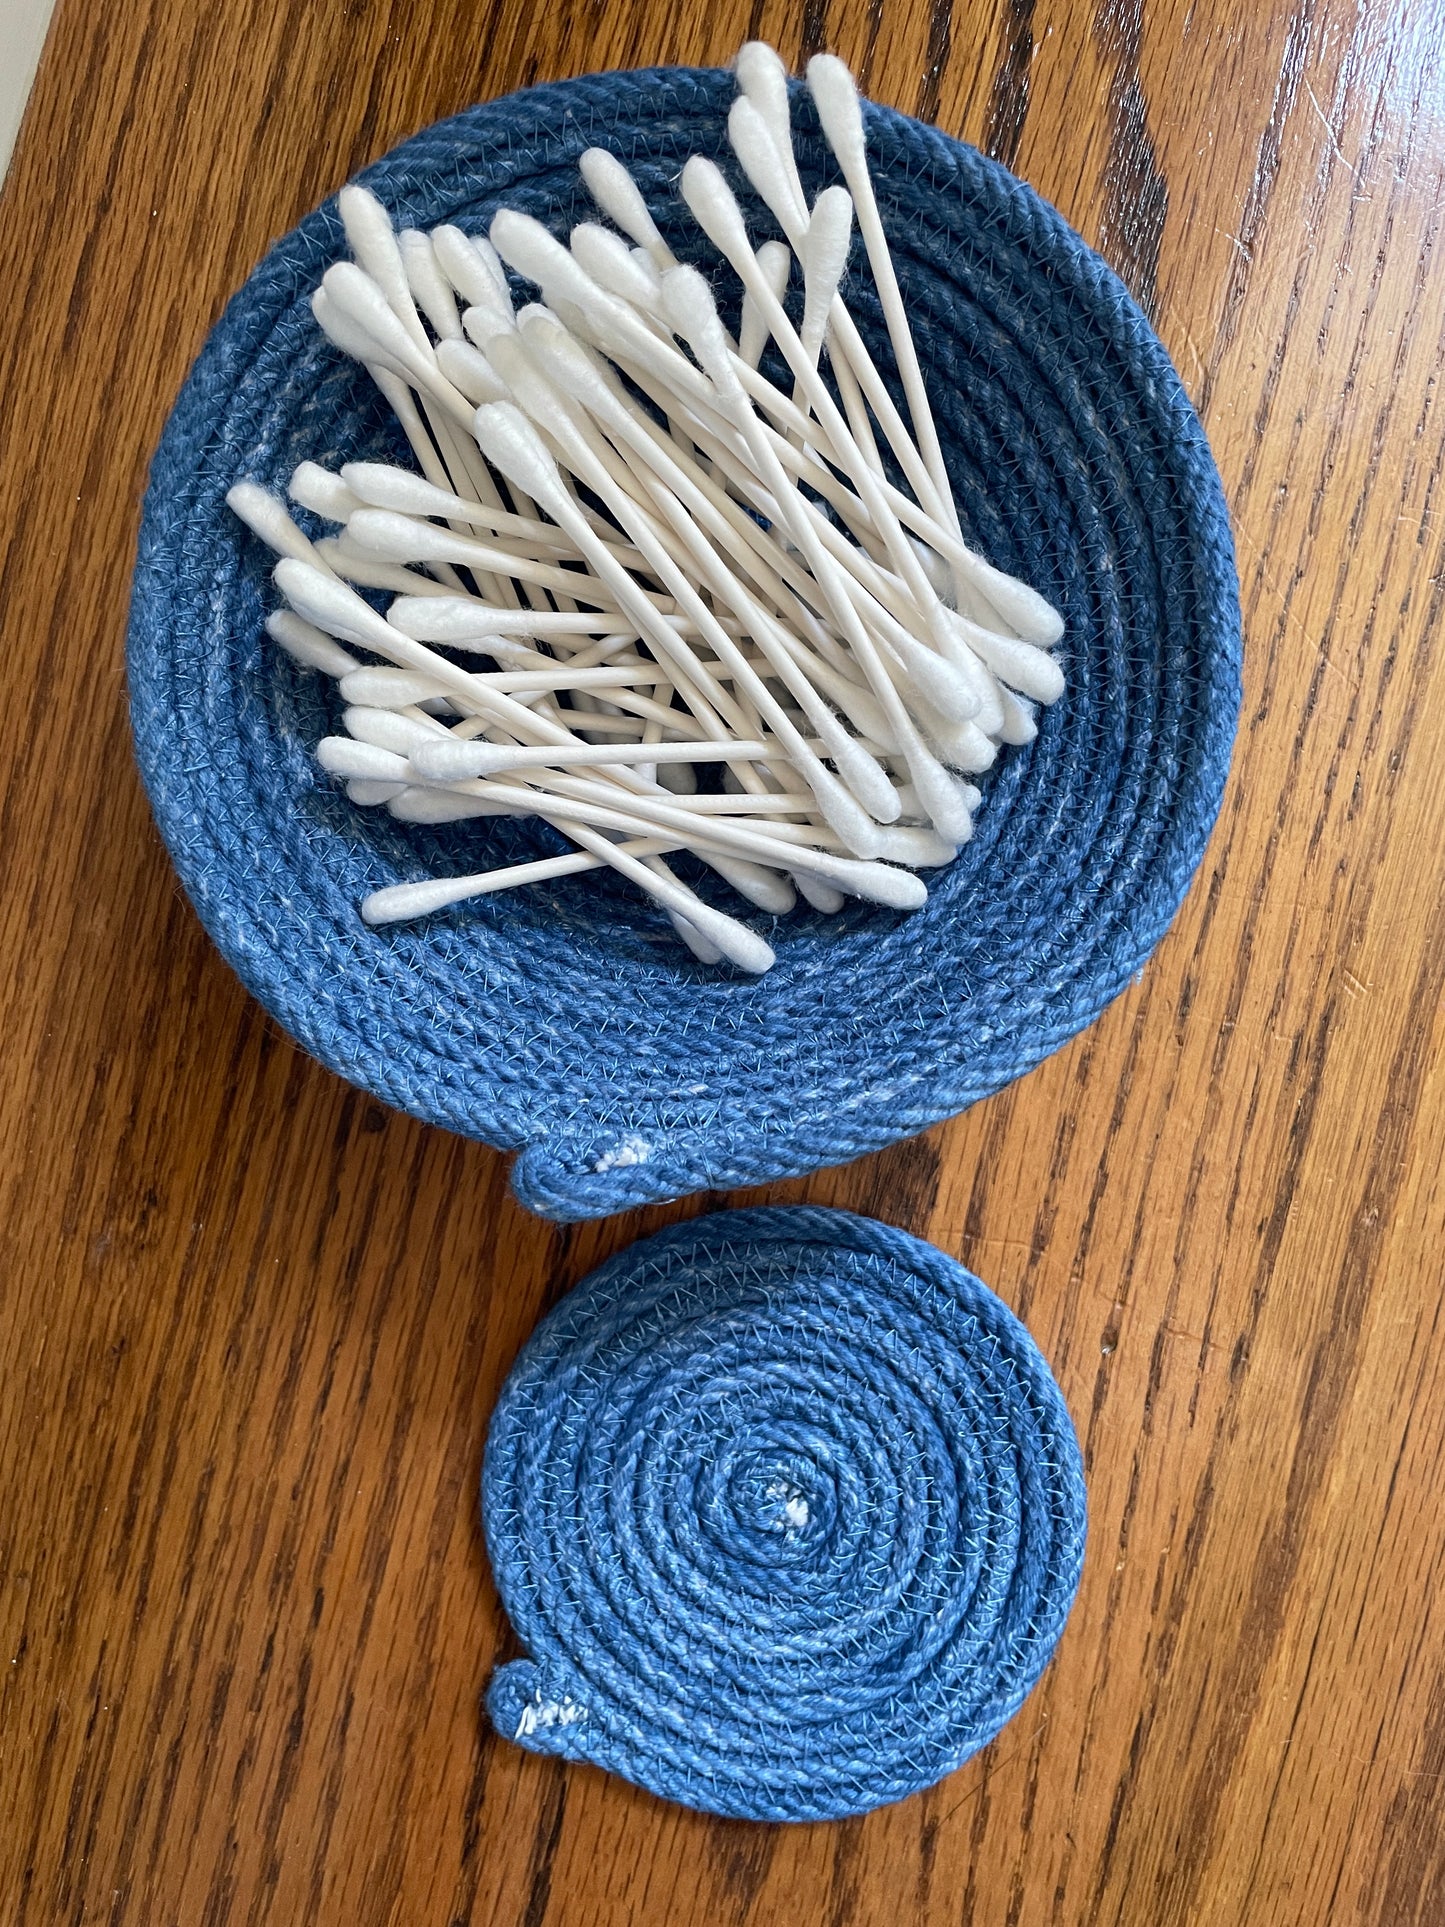 Set of 1 Blue medium sized bowl and Blue coaster